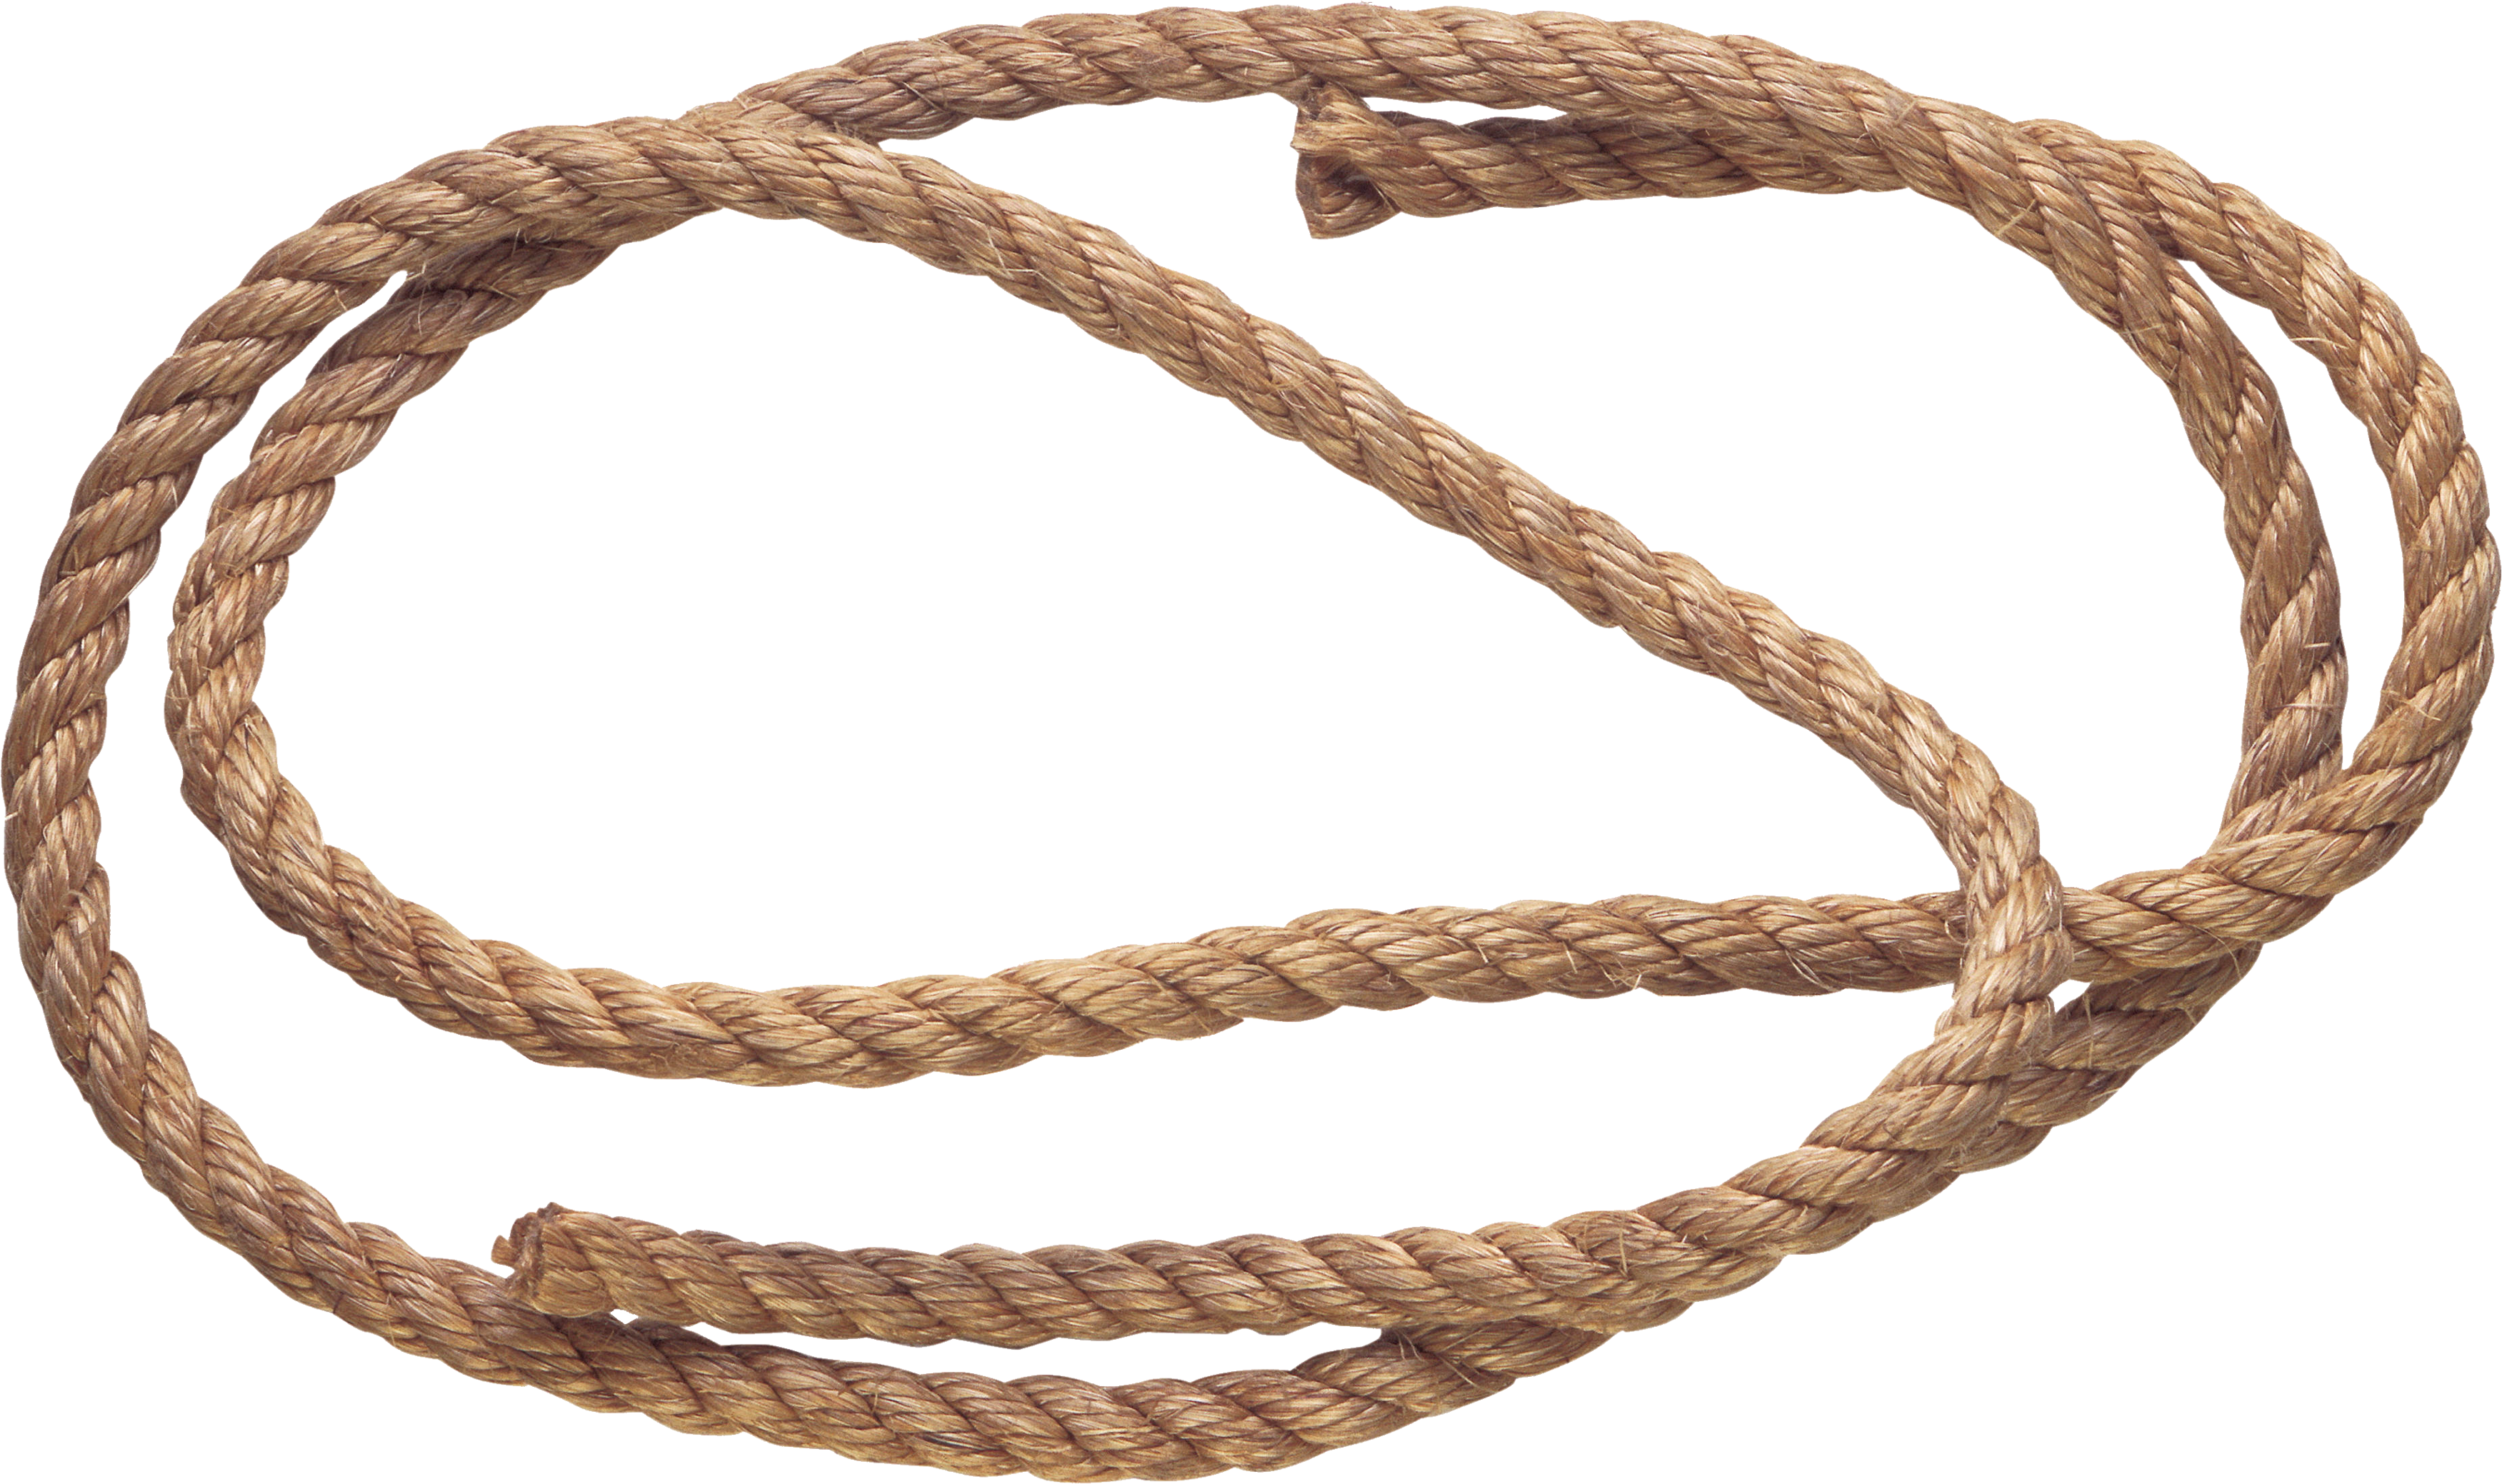 Hanging Rope Download Free PNG